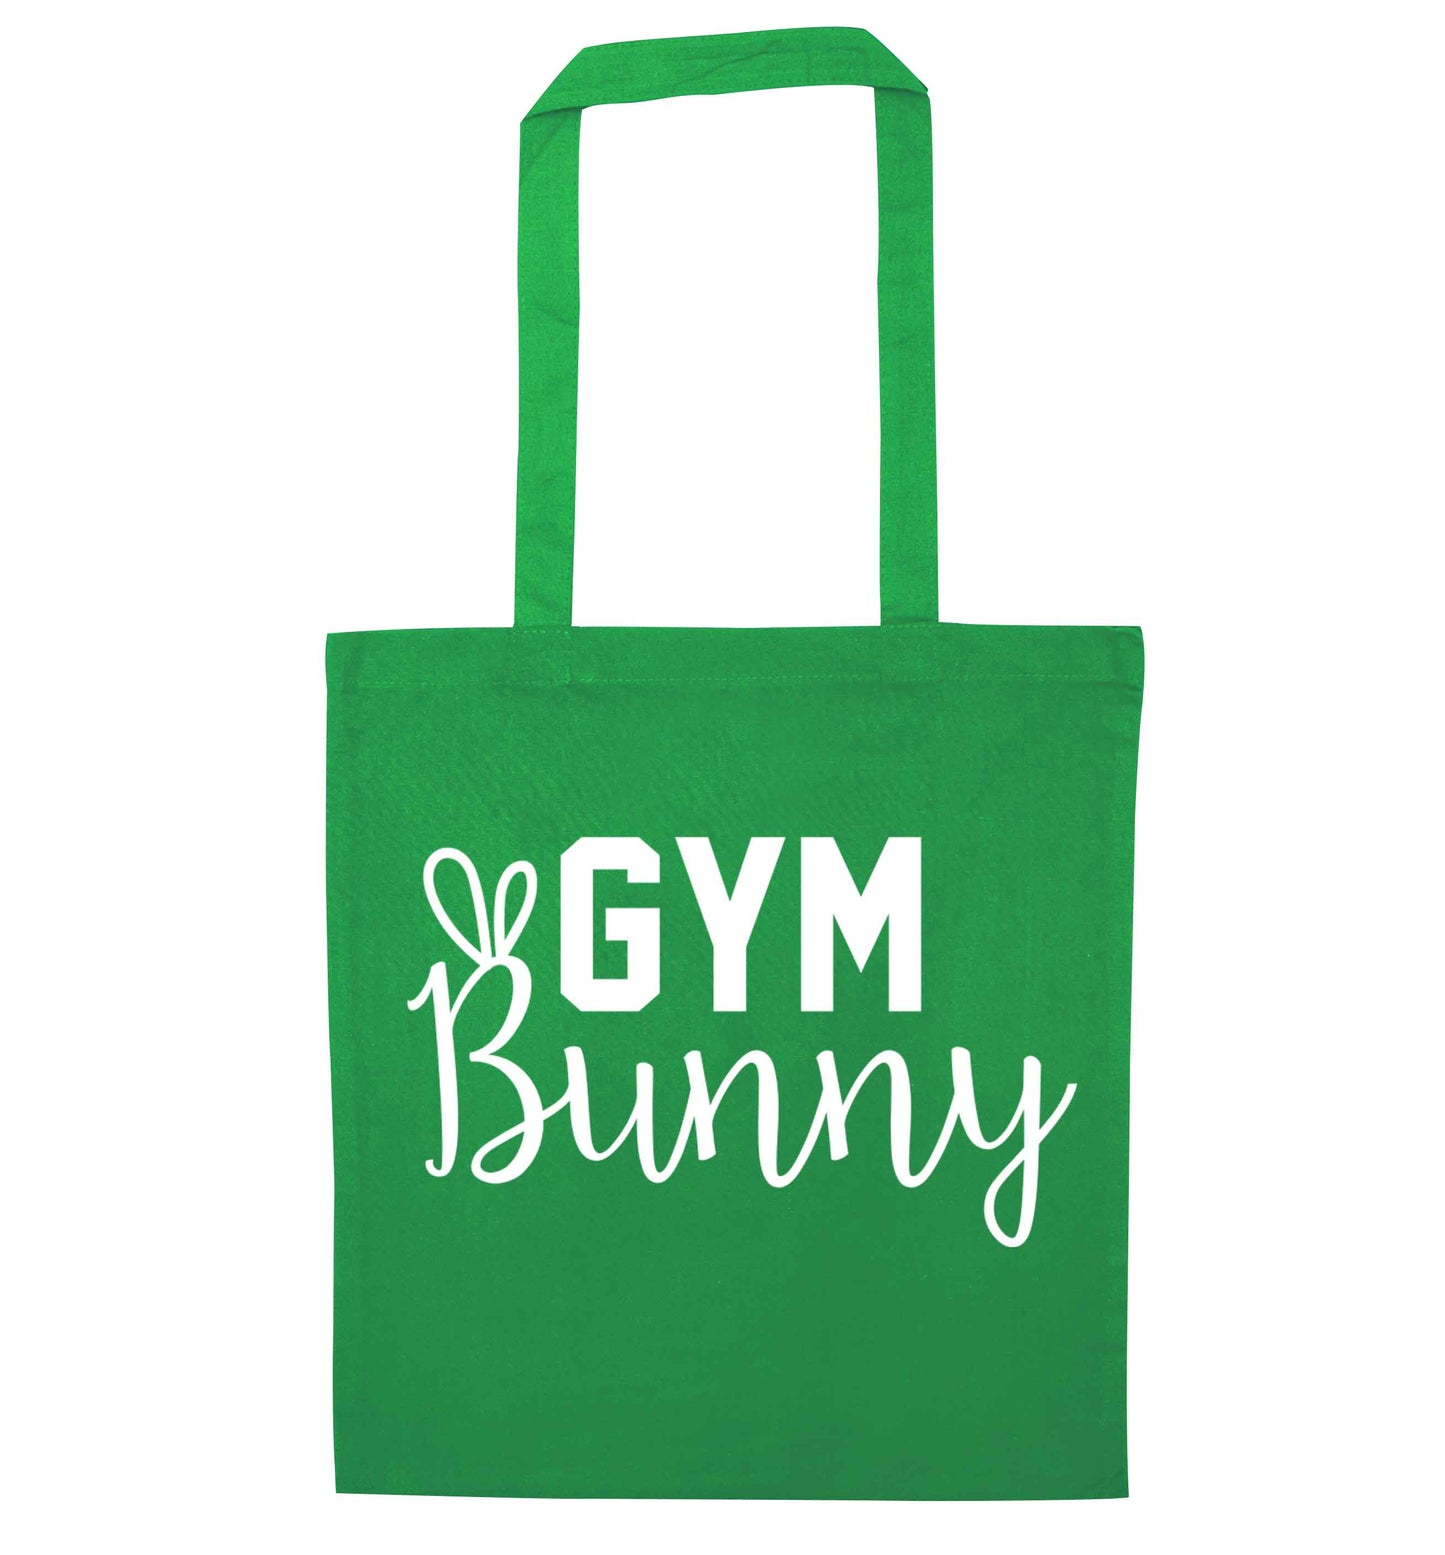 gym bunny green tote bag